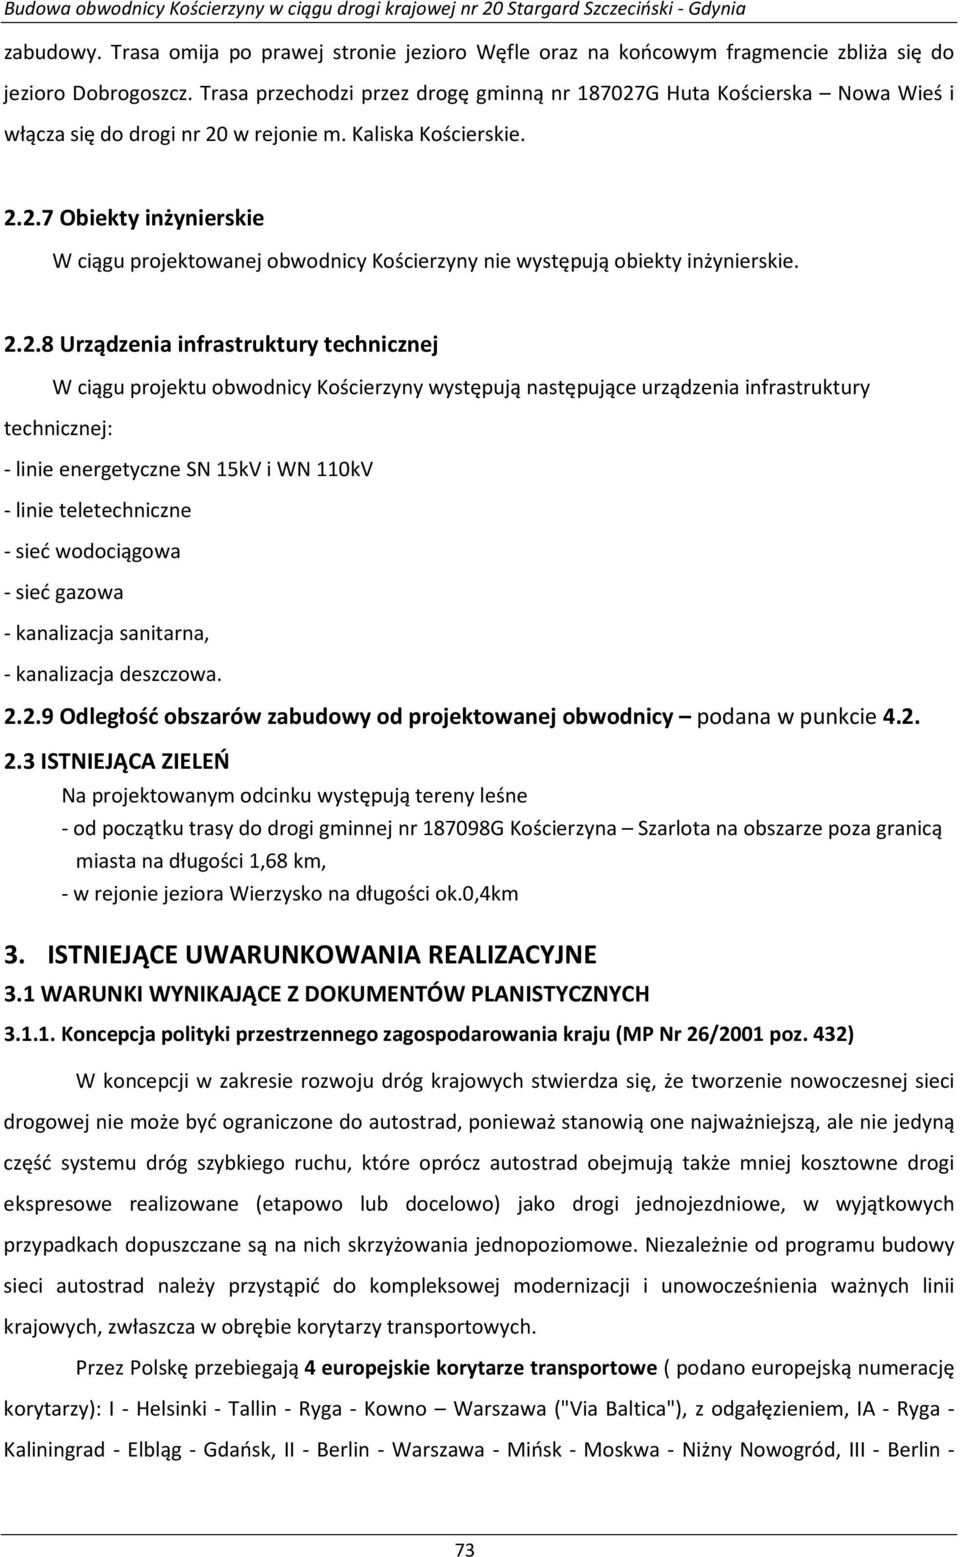 2.2.8 Urządzenia infrastruktury technicznej W ciągu projektu obwodnicy Kościerzyny występują następujące urządzenia infrastruktury technicznej: - linie energetyczne SN 15kV i WN 110kV - linie